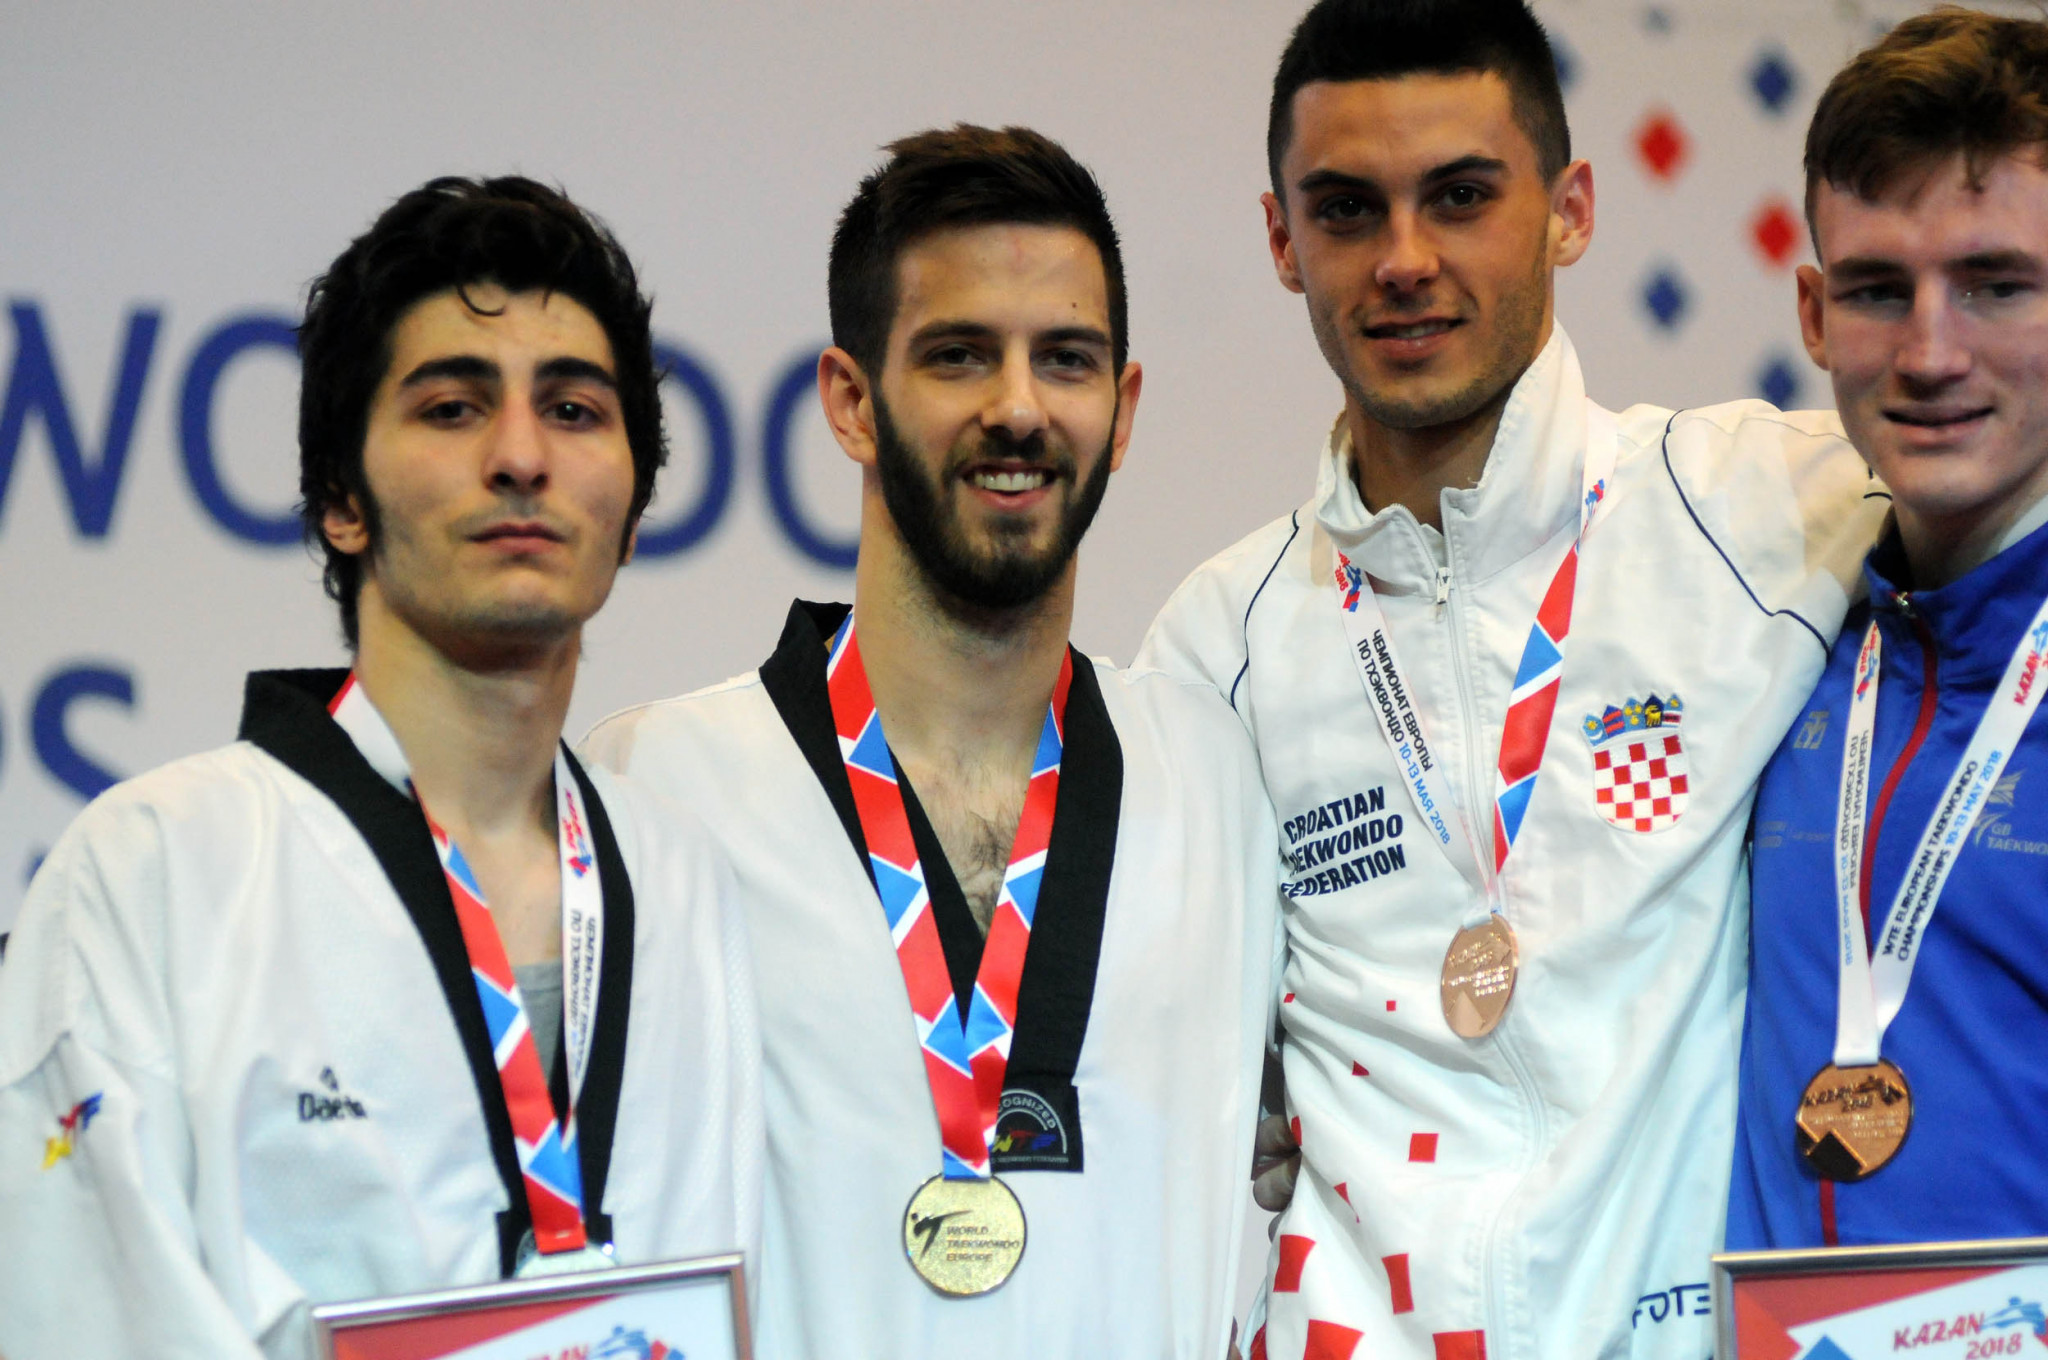 Croatia's Lovre Brecic, second from left, won the men's under-63kg gold medal ©World Taekwondo Europe/Murat Tahran